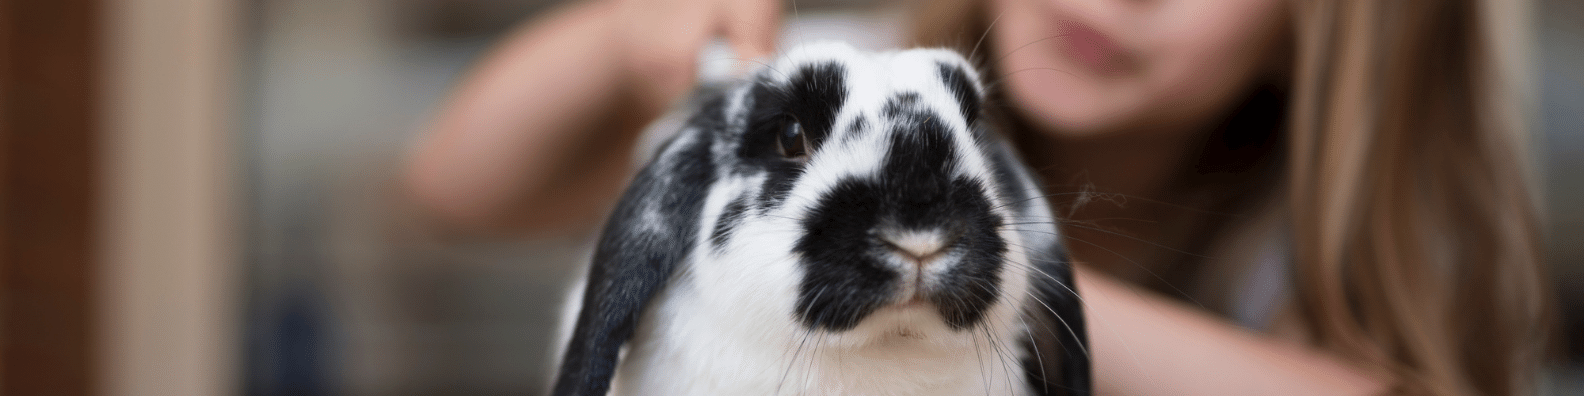 возраст кролика по человеческим меркам